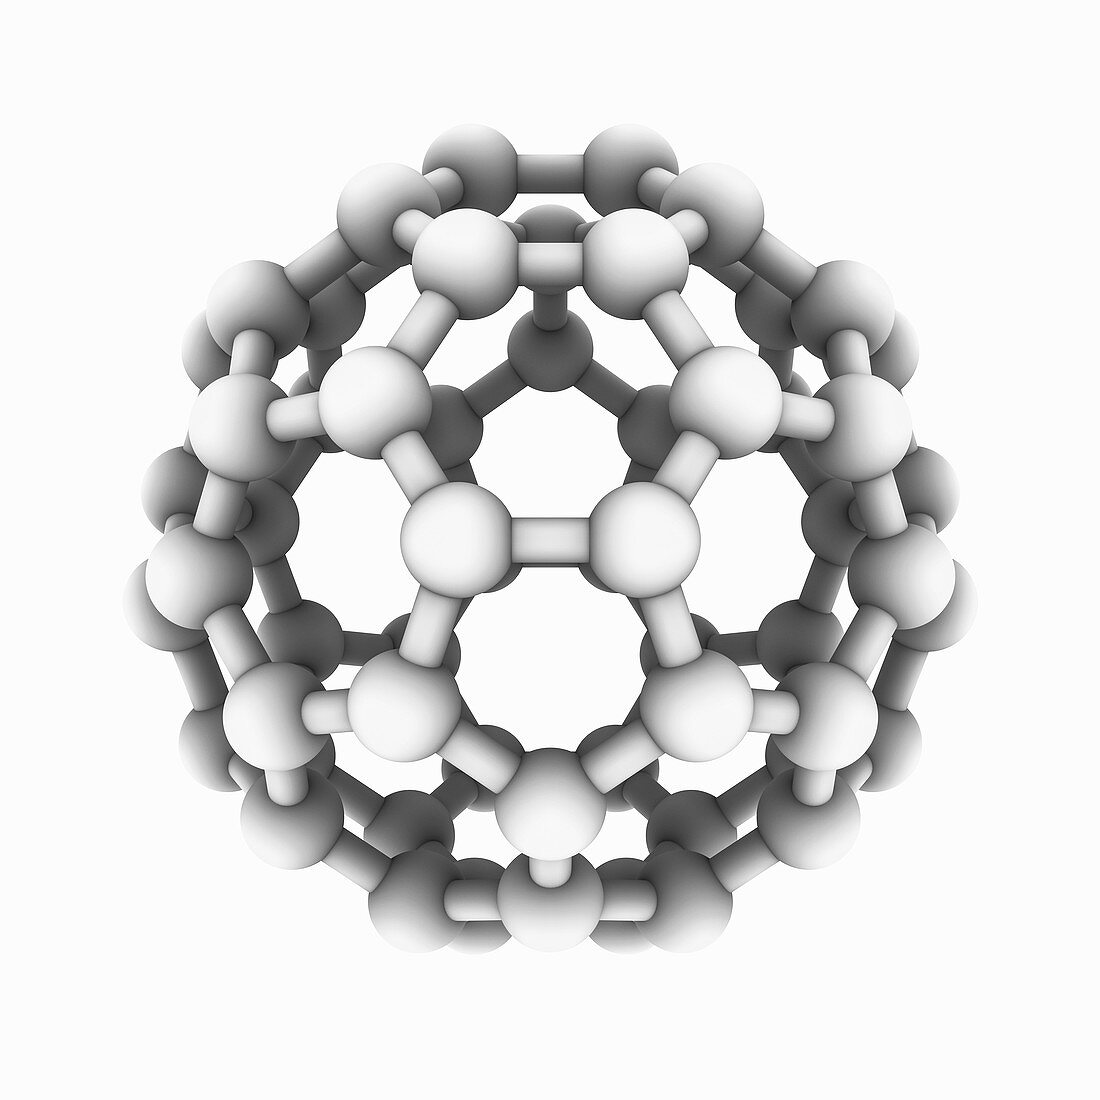 Buckyball C60 molecule detail, illustration